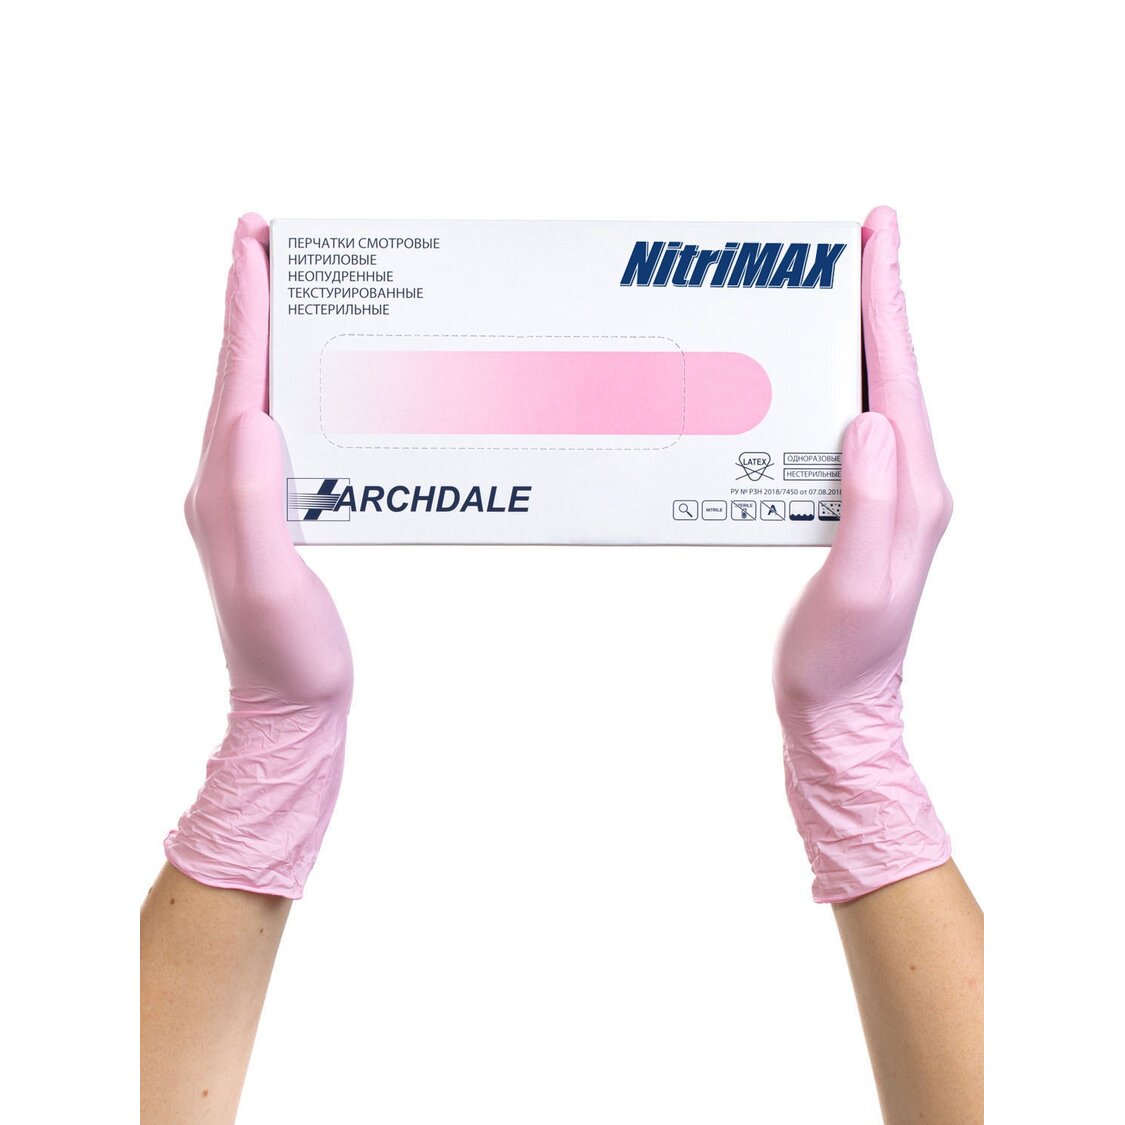 Перчатки Archdale Nitrimax смотровые нестерильные нитриловые неопудренные текстурированные розовые размер M 50 пар